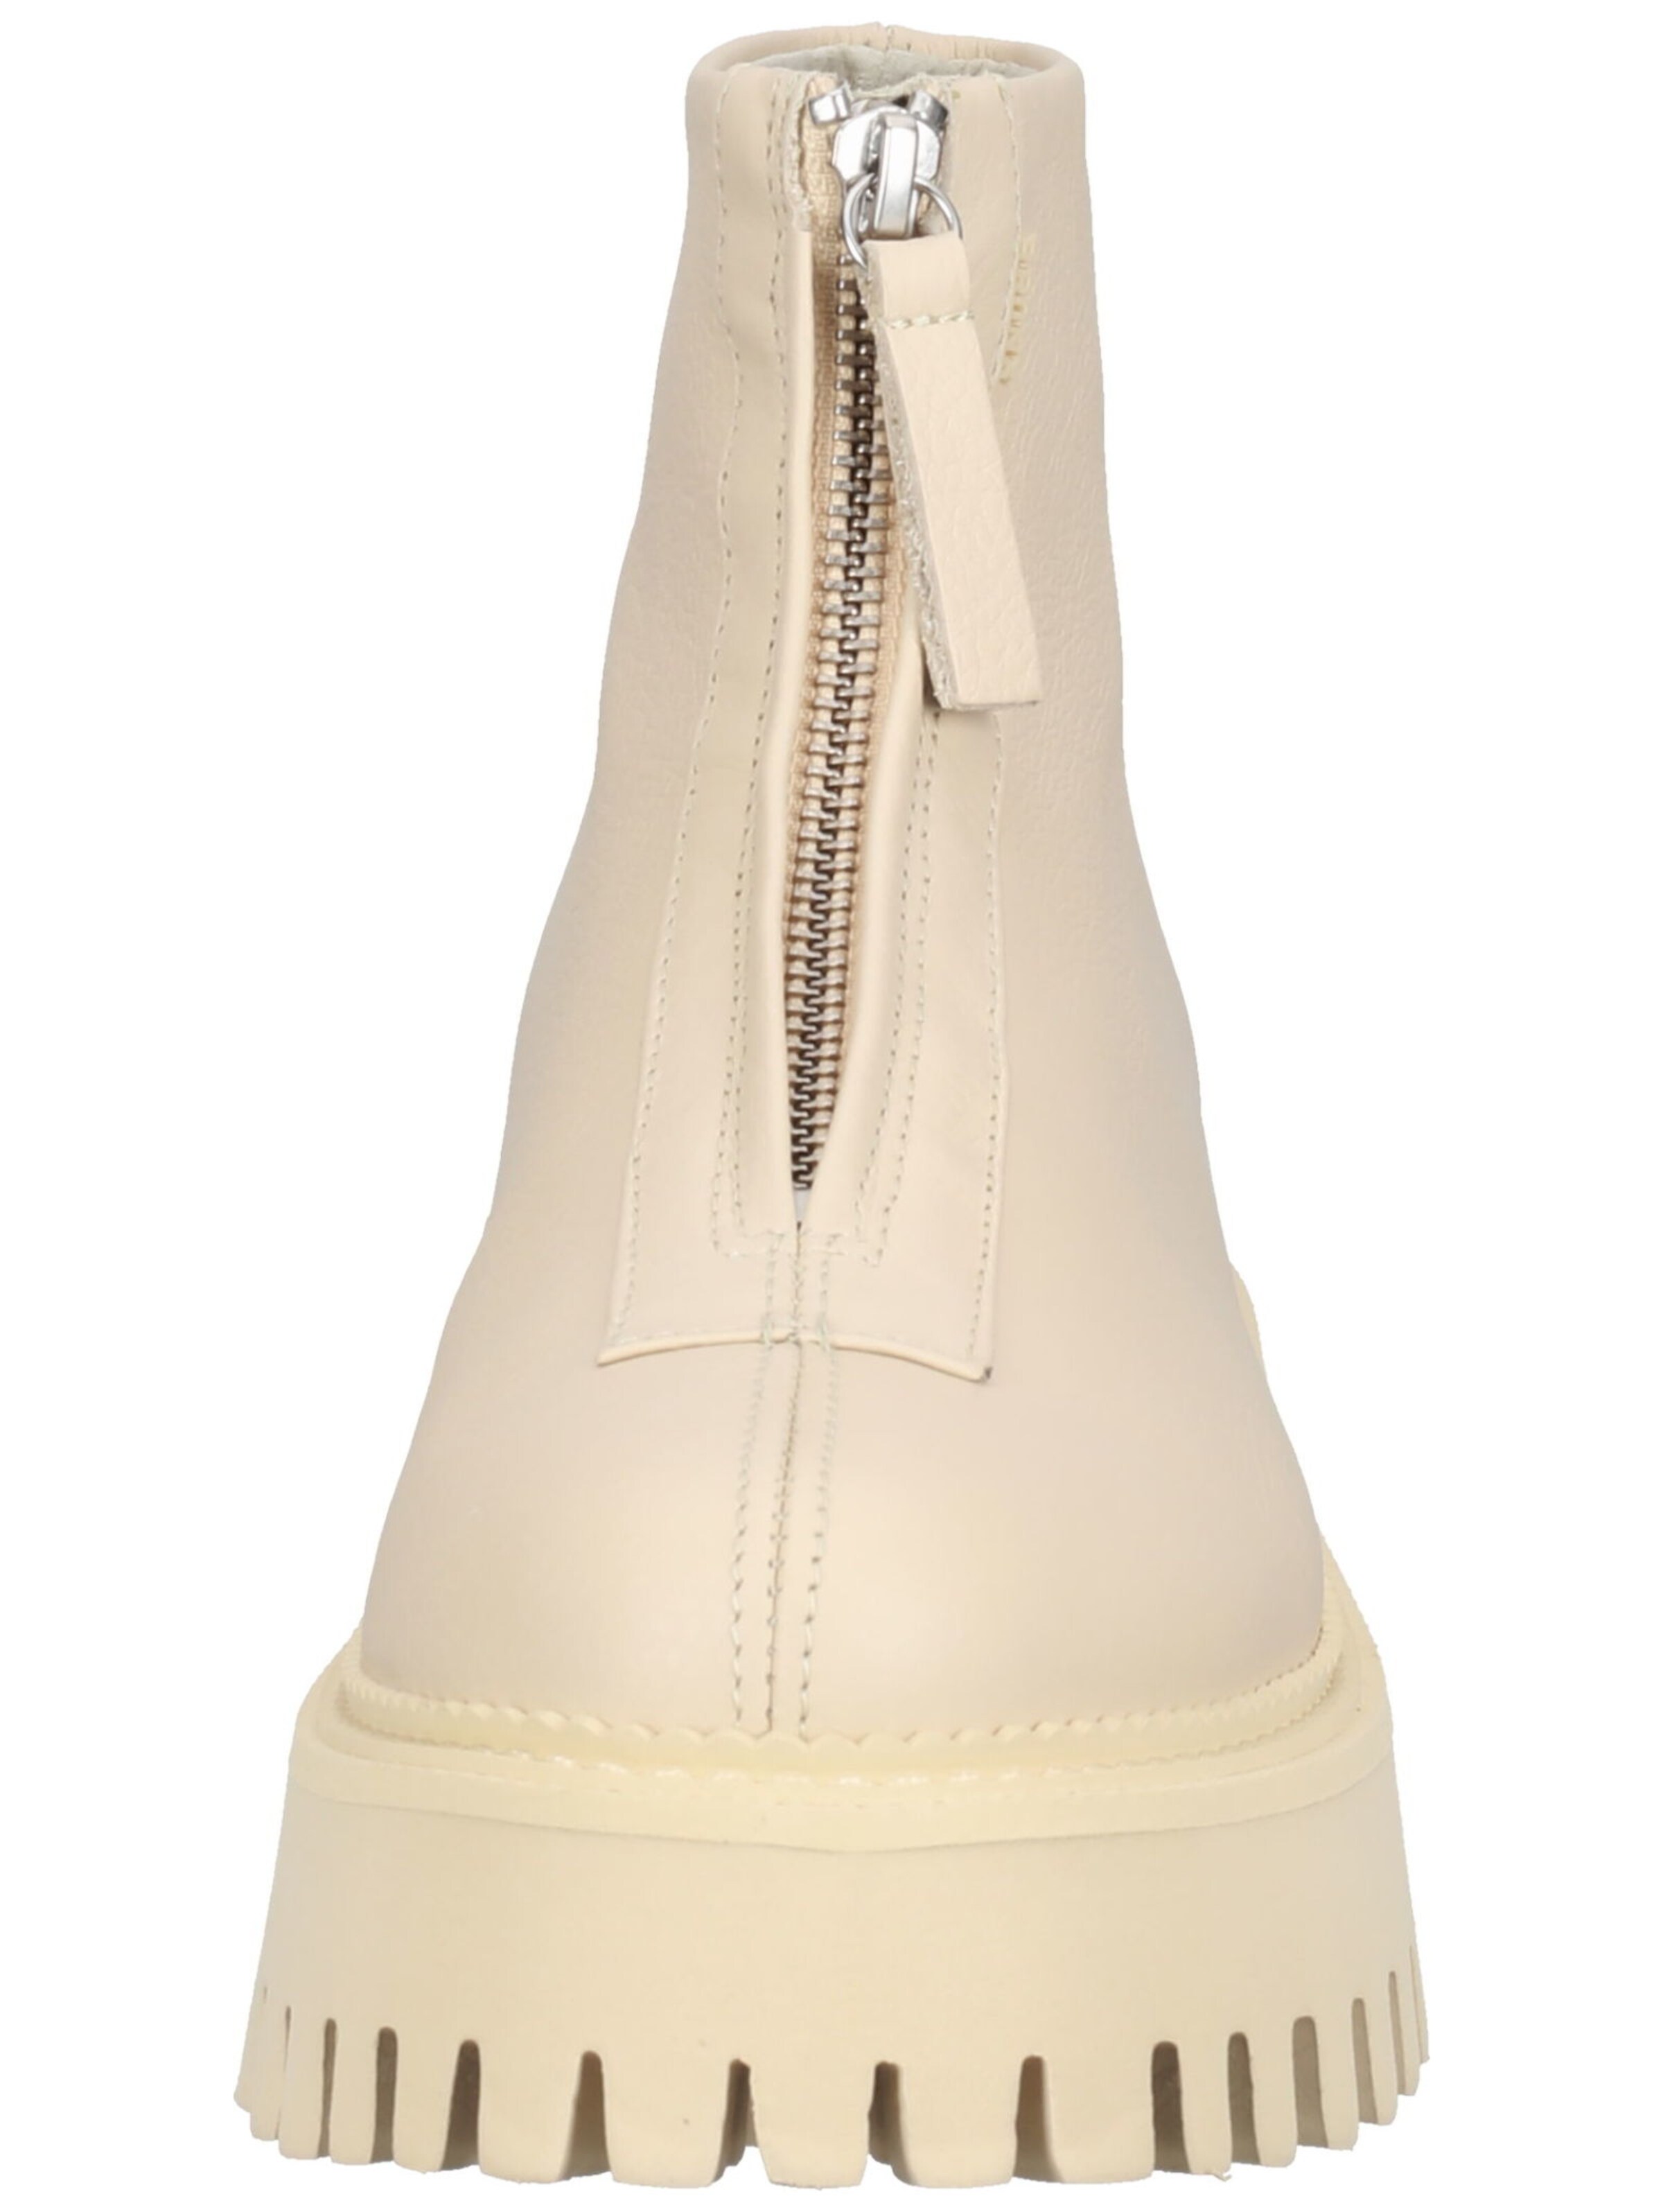 Frauen Stiefel BRONX Stiefelette in Champagner - QW26617